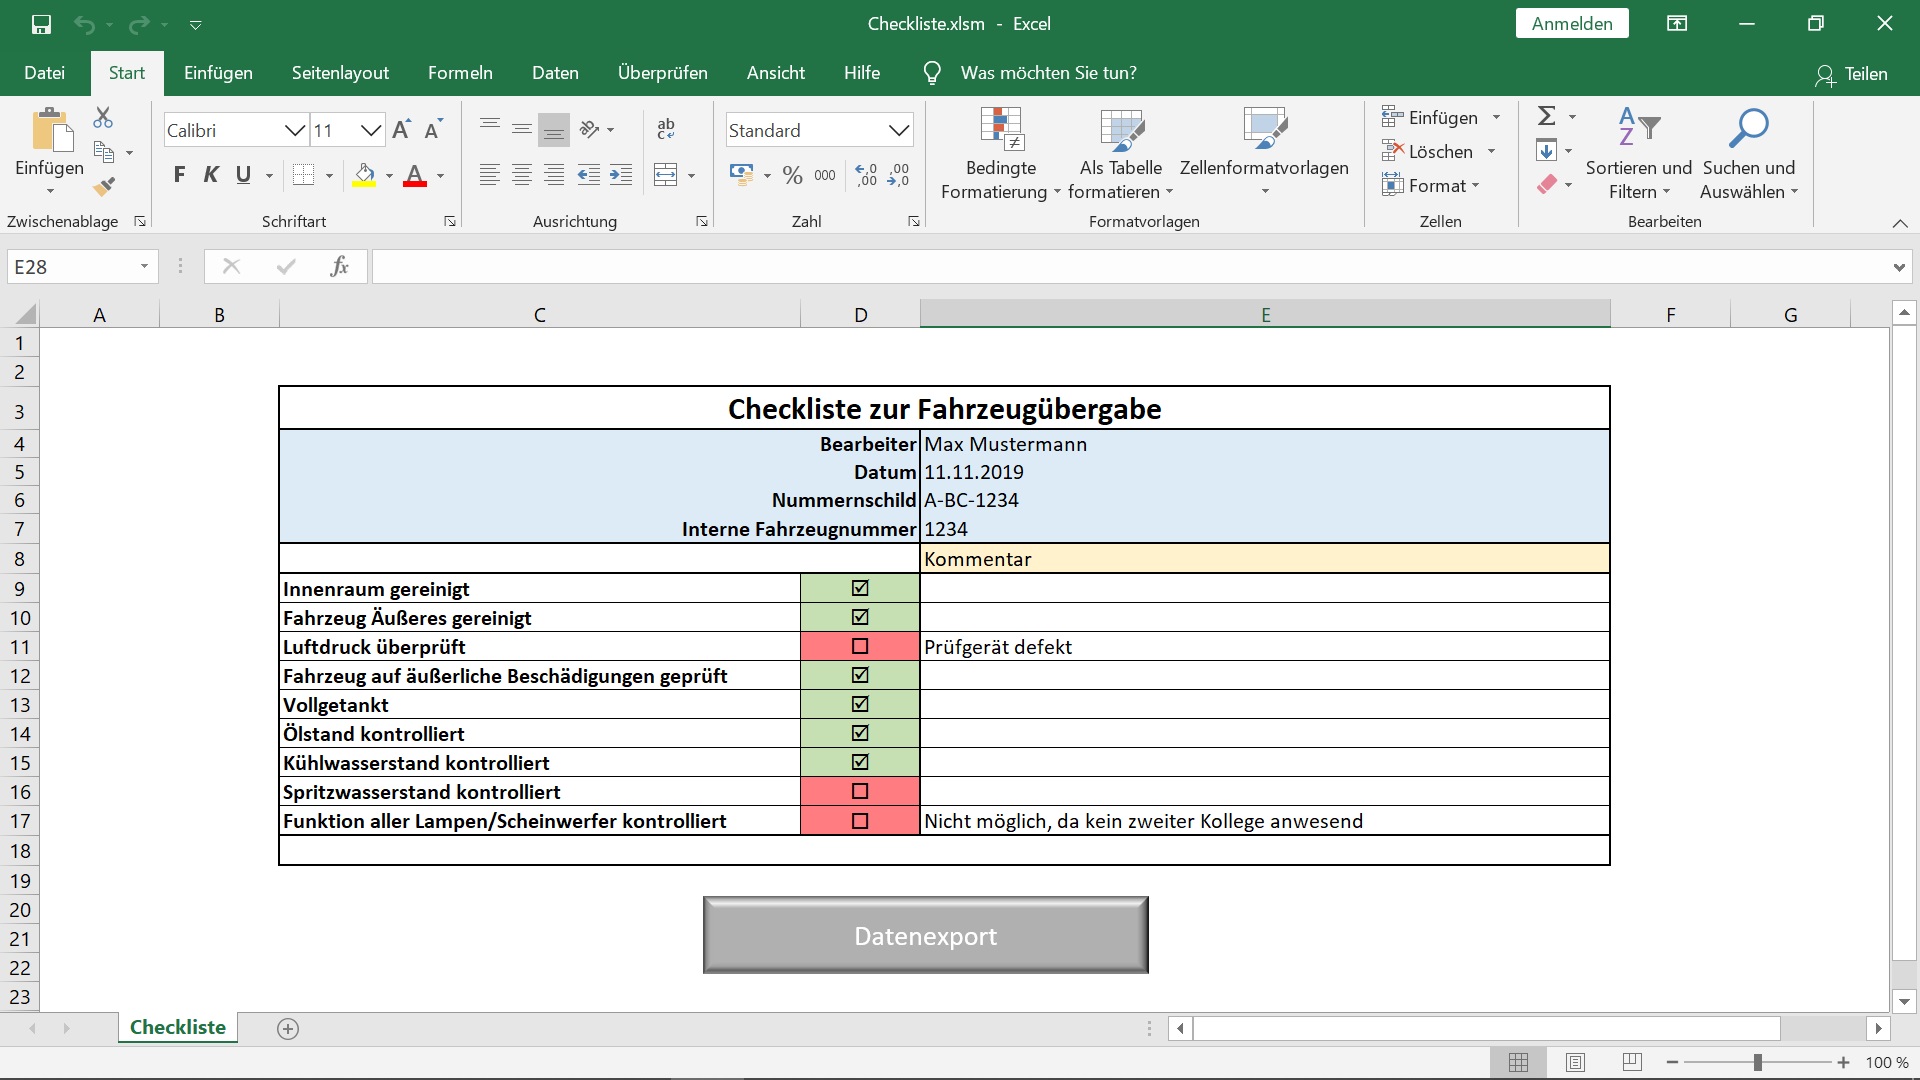 Excel Checklisten als Basis für automatisierte Auswertungen